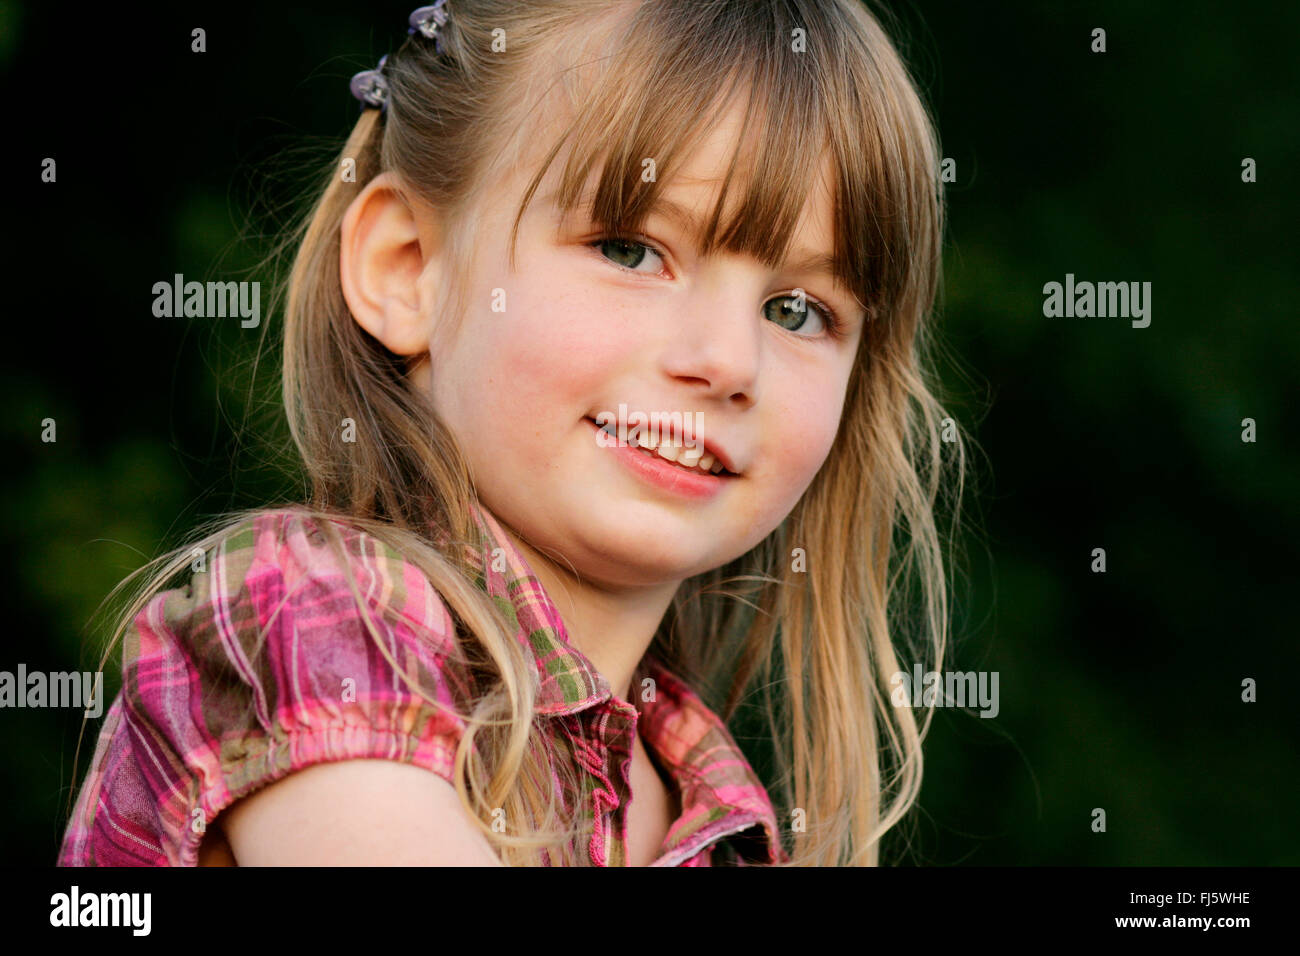 Little girl smiling, portrait, Allemagne Banque D'Images